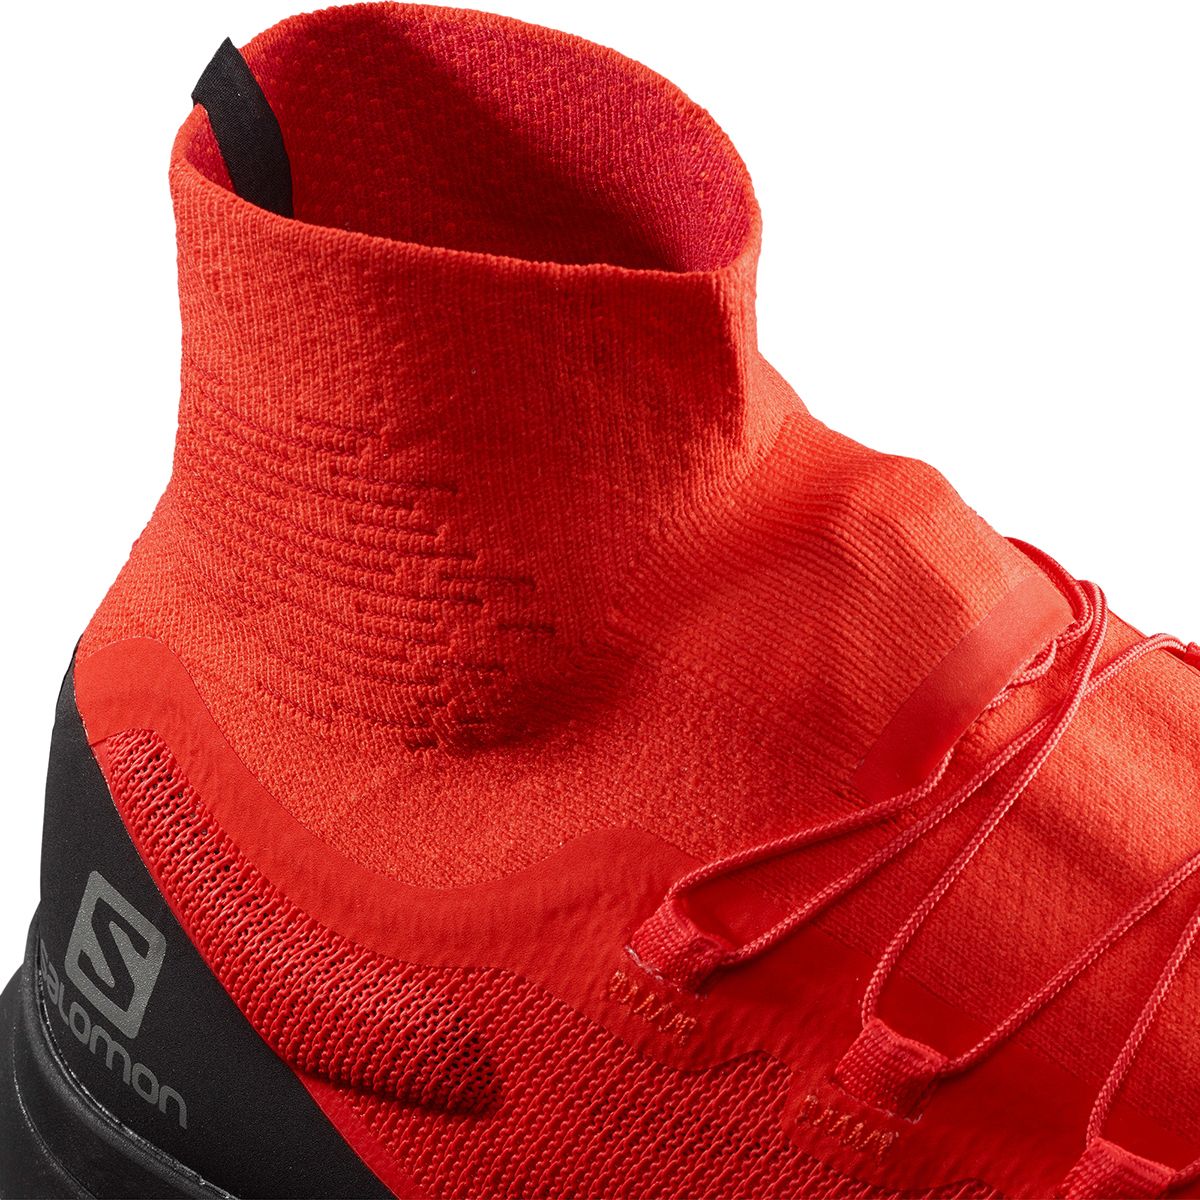 Rang Slange skade Salomon S-Lab Sense 8 SG Trail Running Shoe - Men's - Footwear